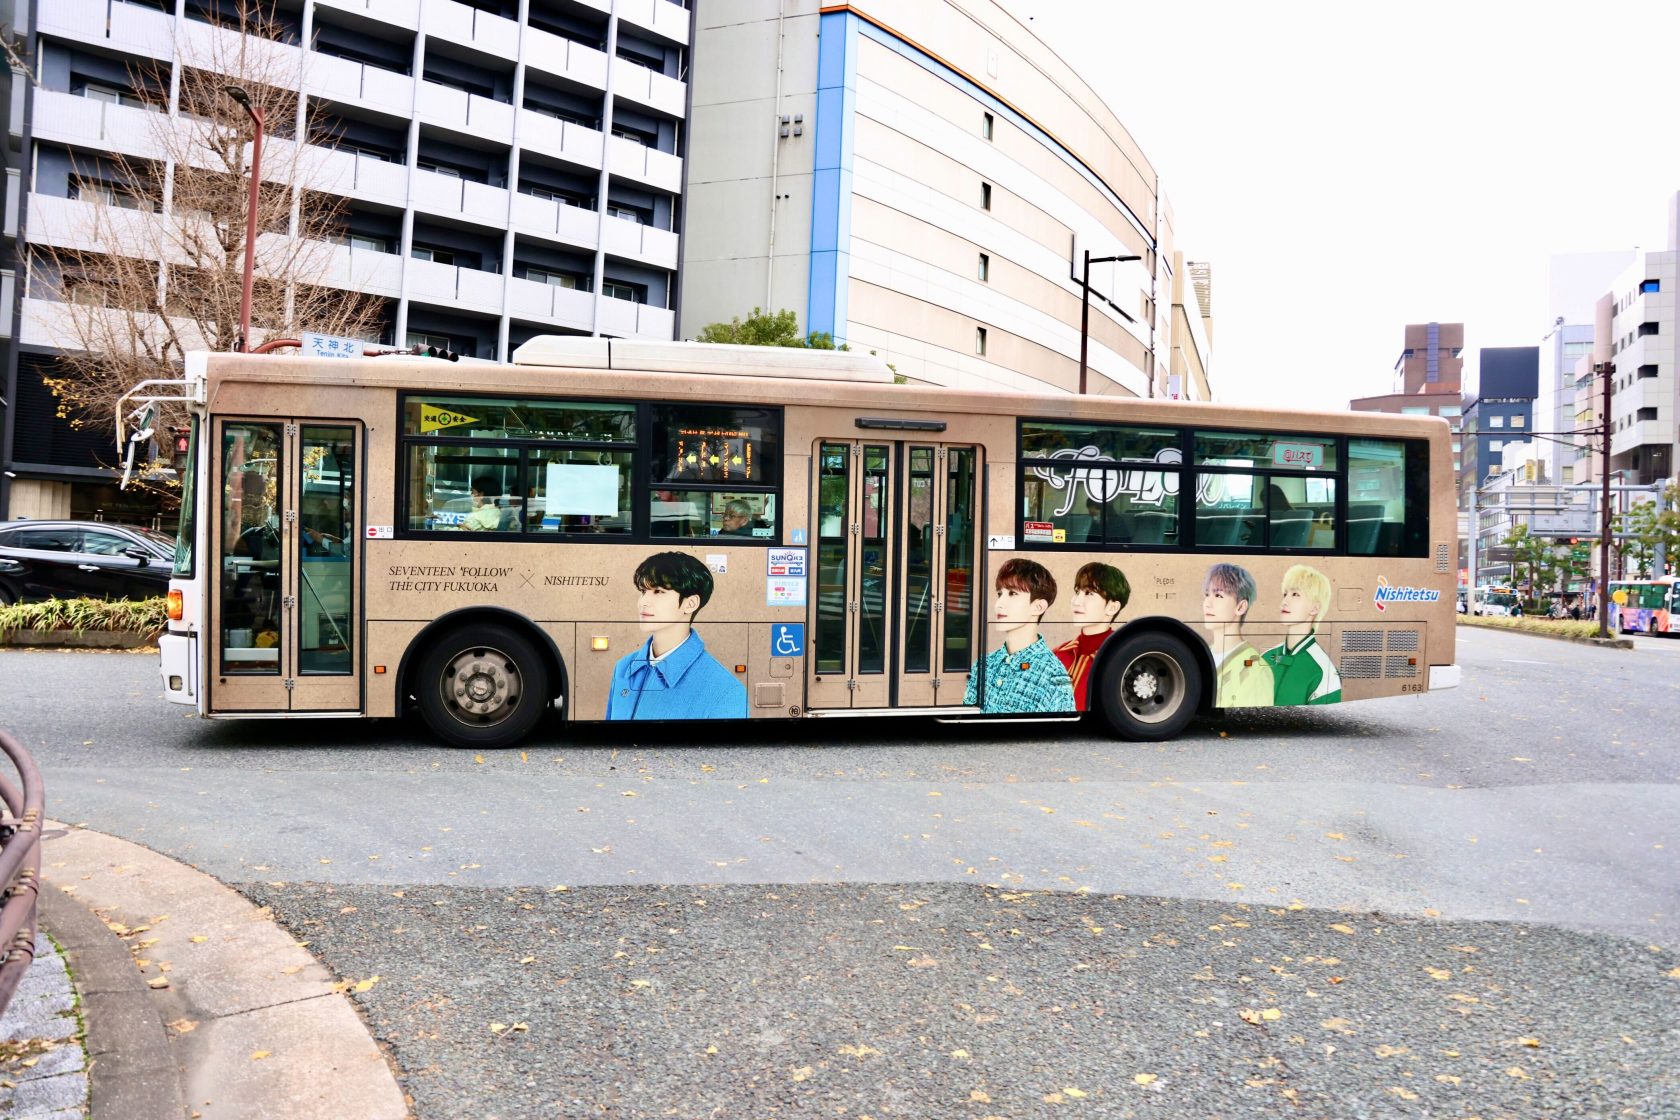 福岡市内を走るSEVENTEENのビジュアルがデザインされた西鉄バス(P)&(C) PLEDIS Entertainment